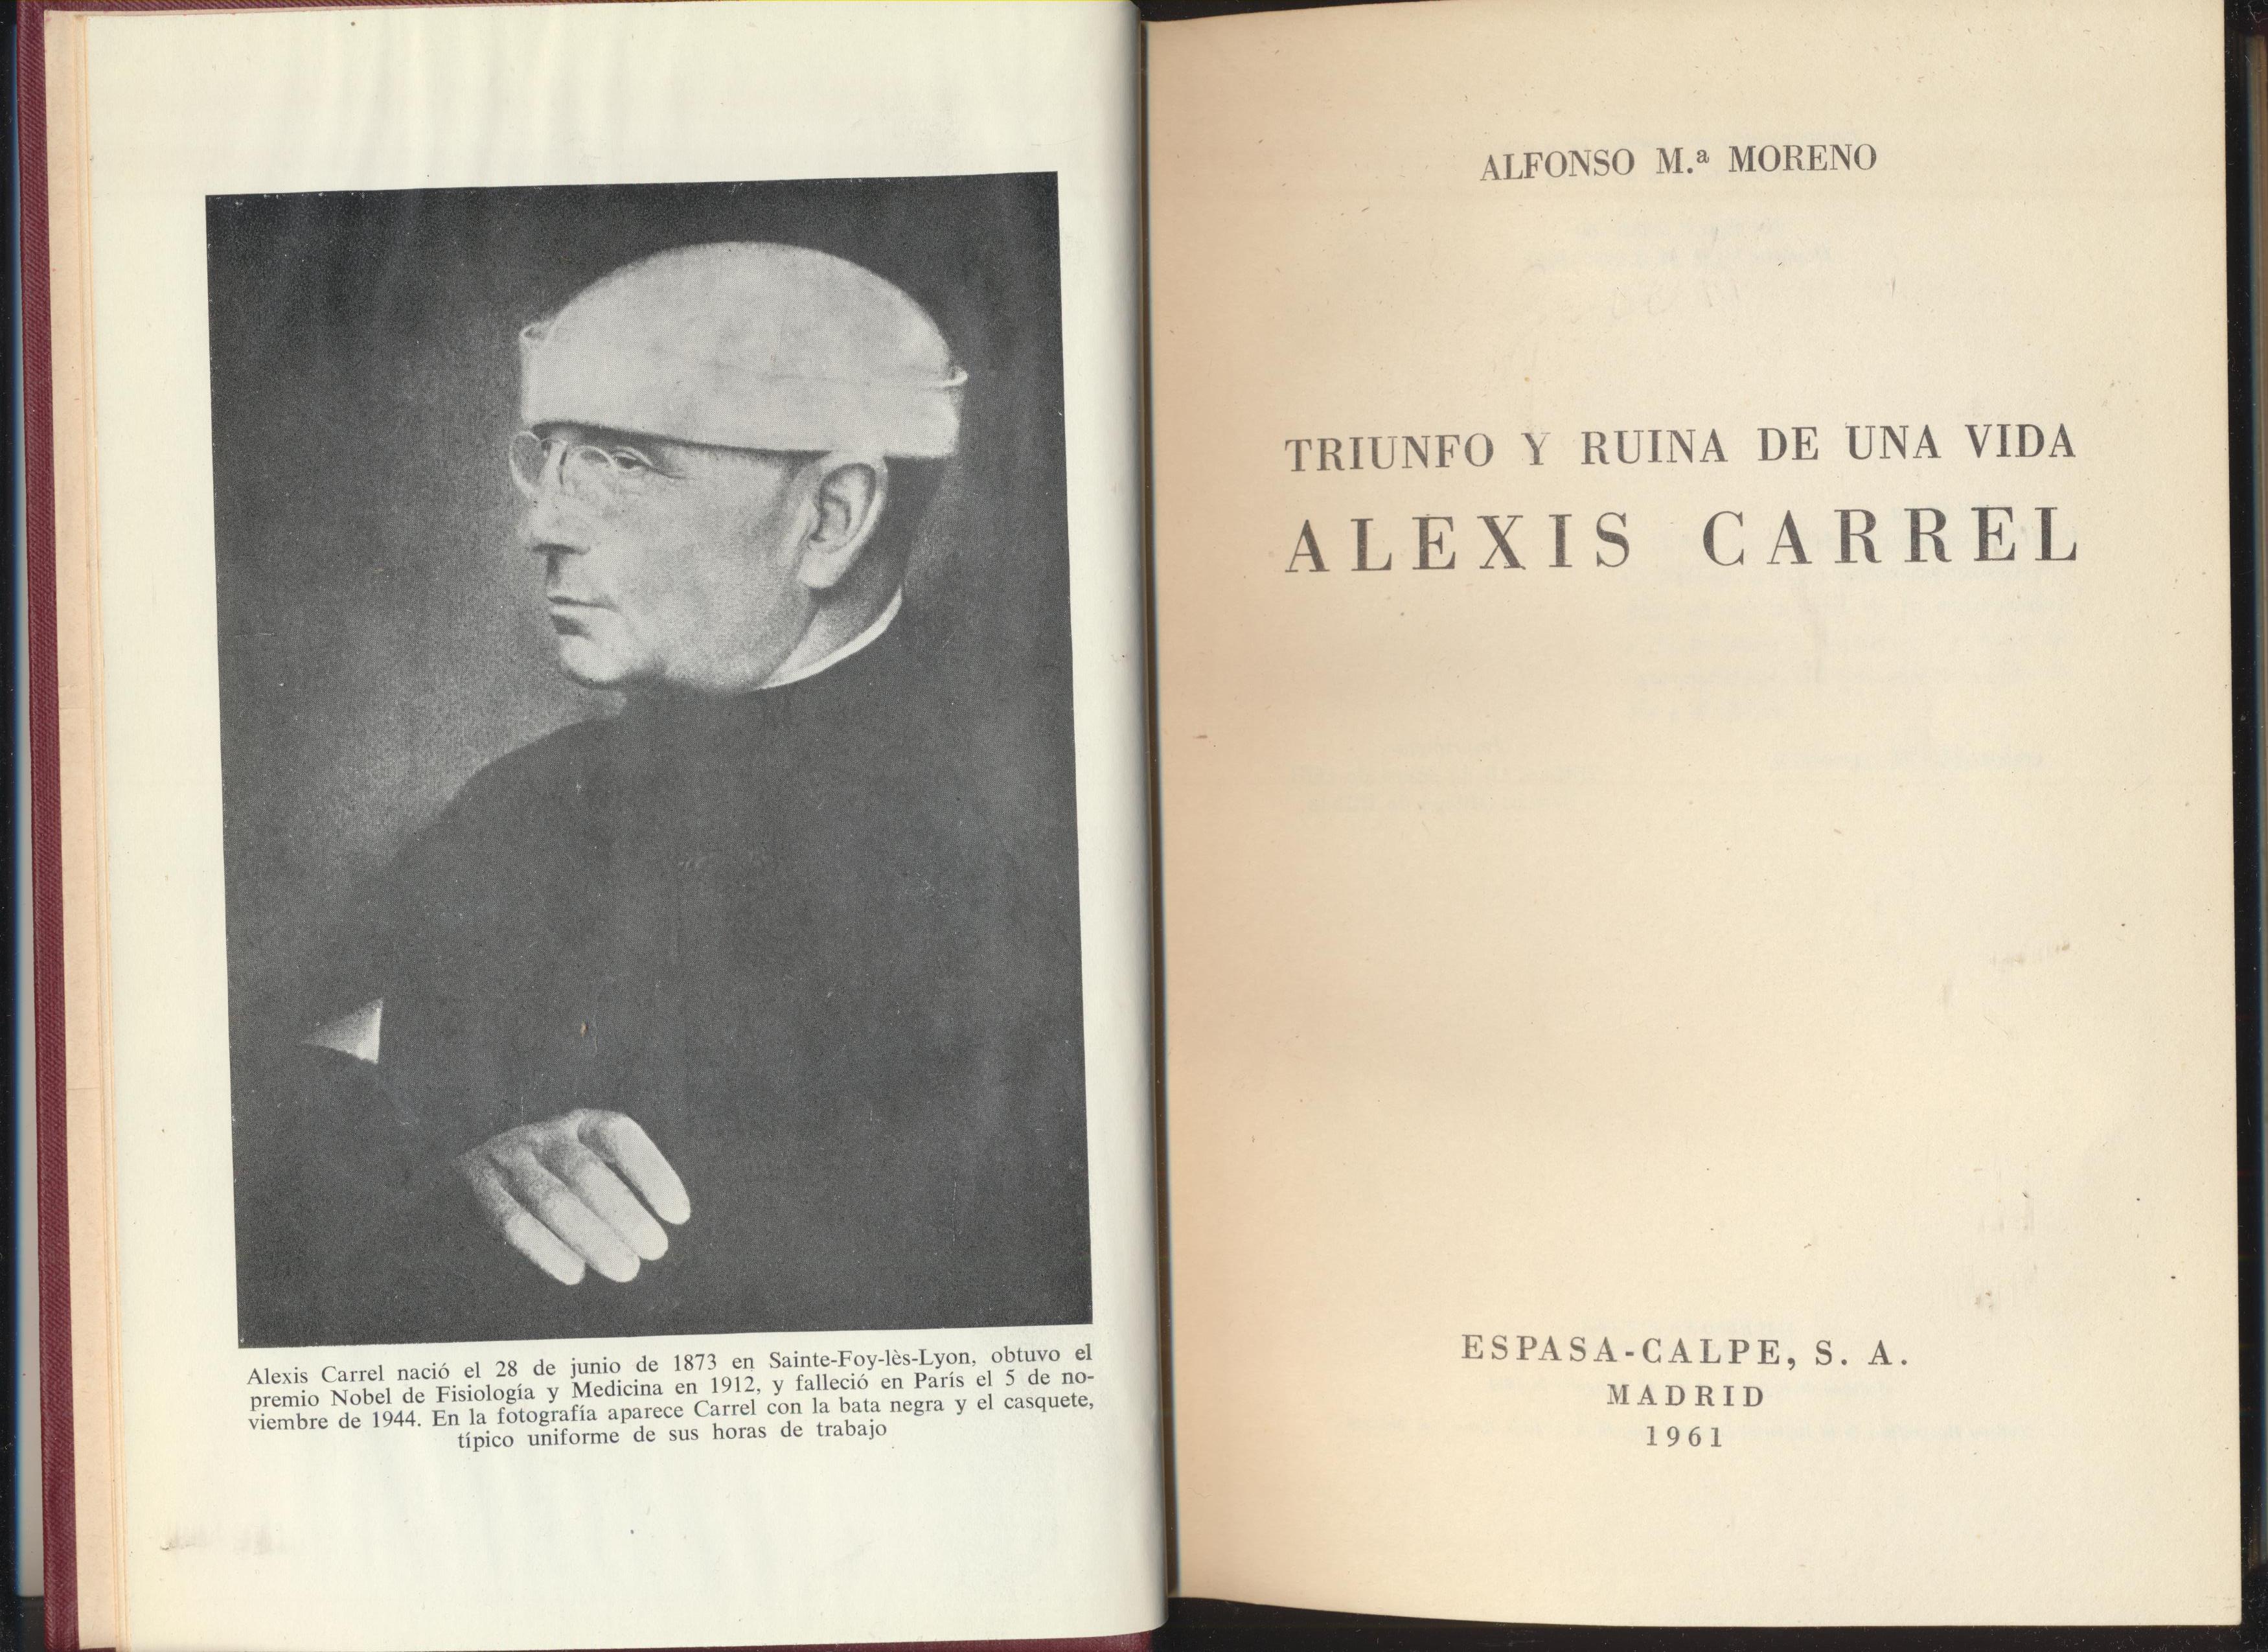 Alfonso Mª Moreno. Triunfo y ruina de una vida, Alexis Carrel. Espasa Calpe 1961